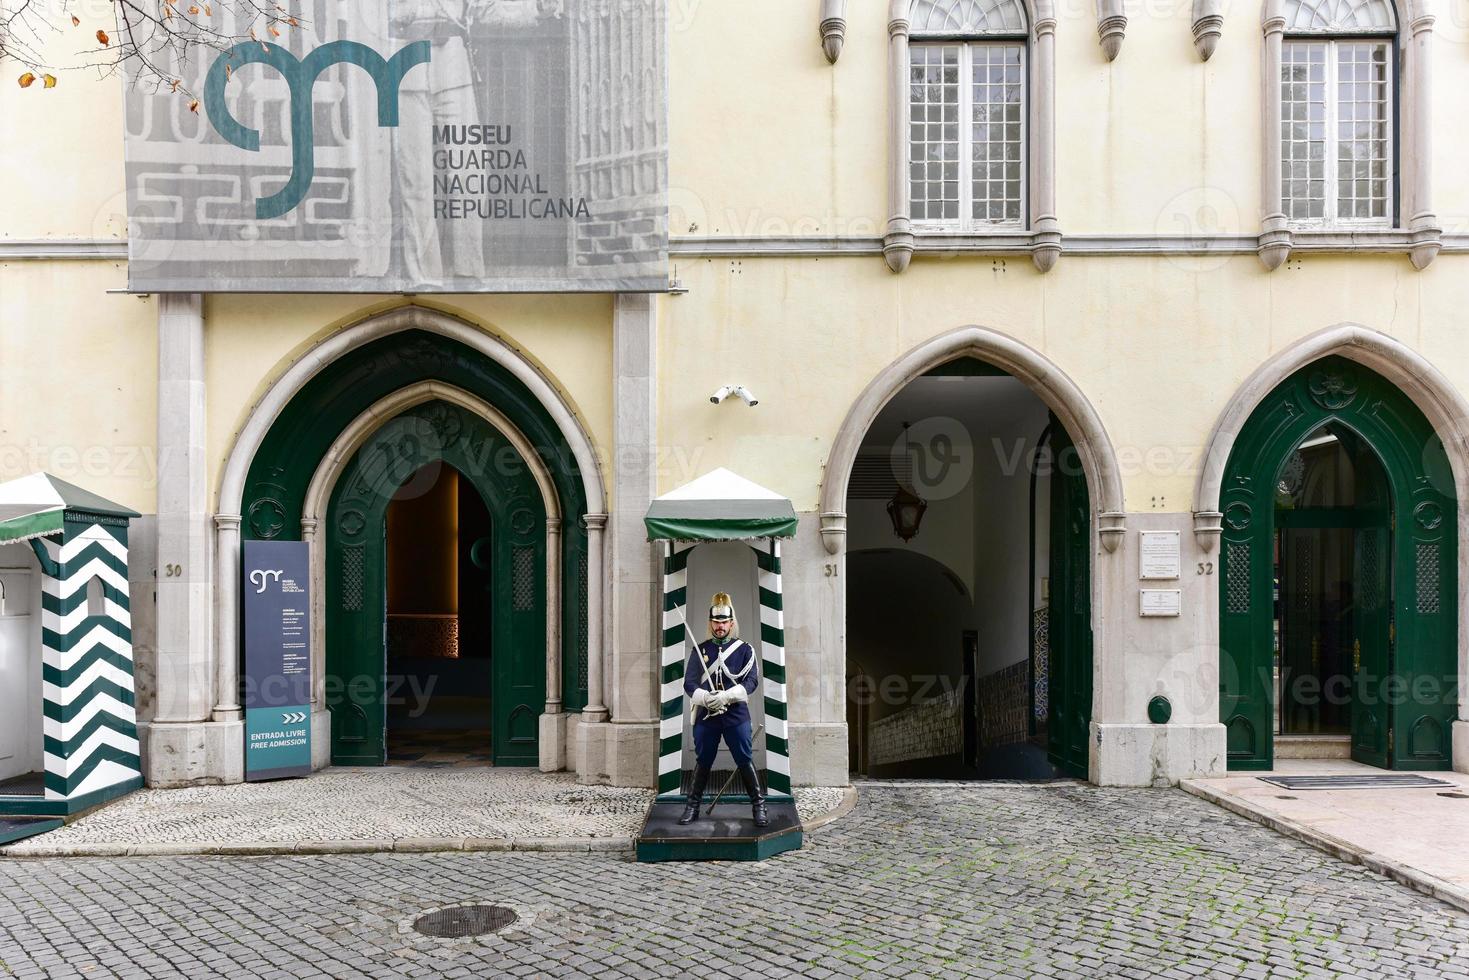 Nationalmuseum der Republikanischen Garde in Lissabon, Portugal foto